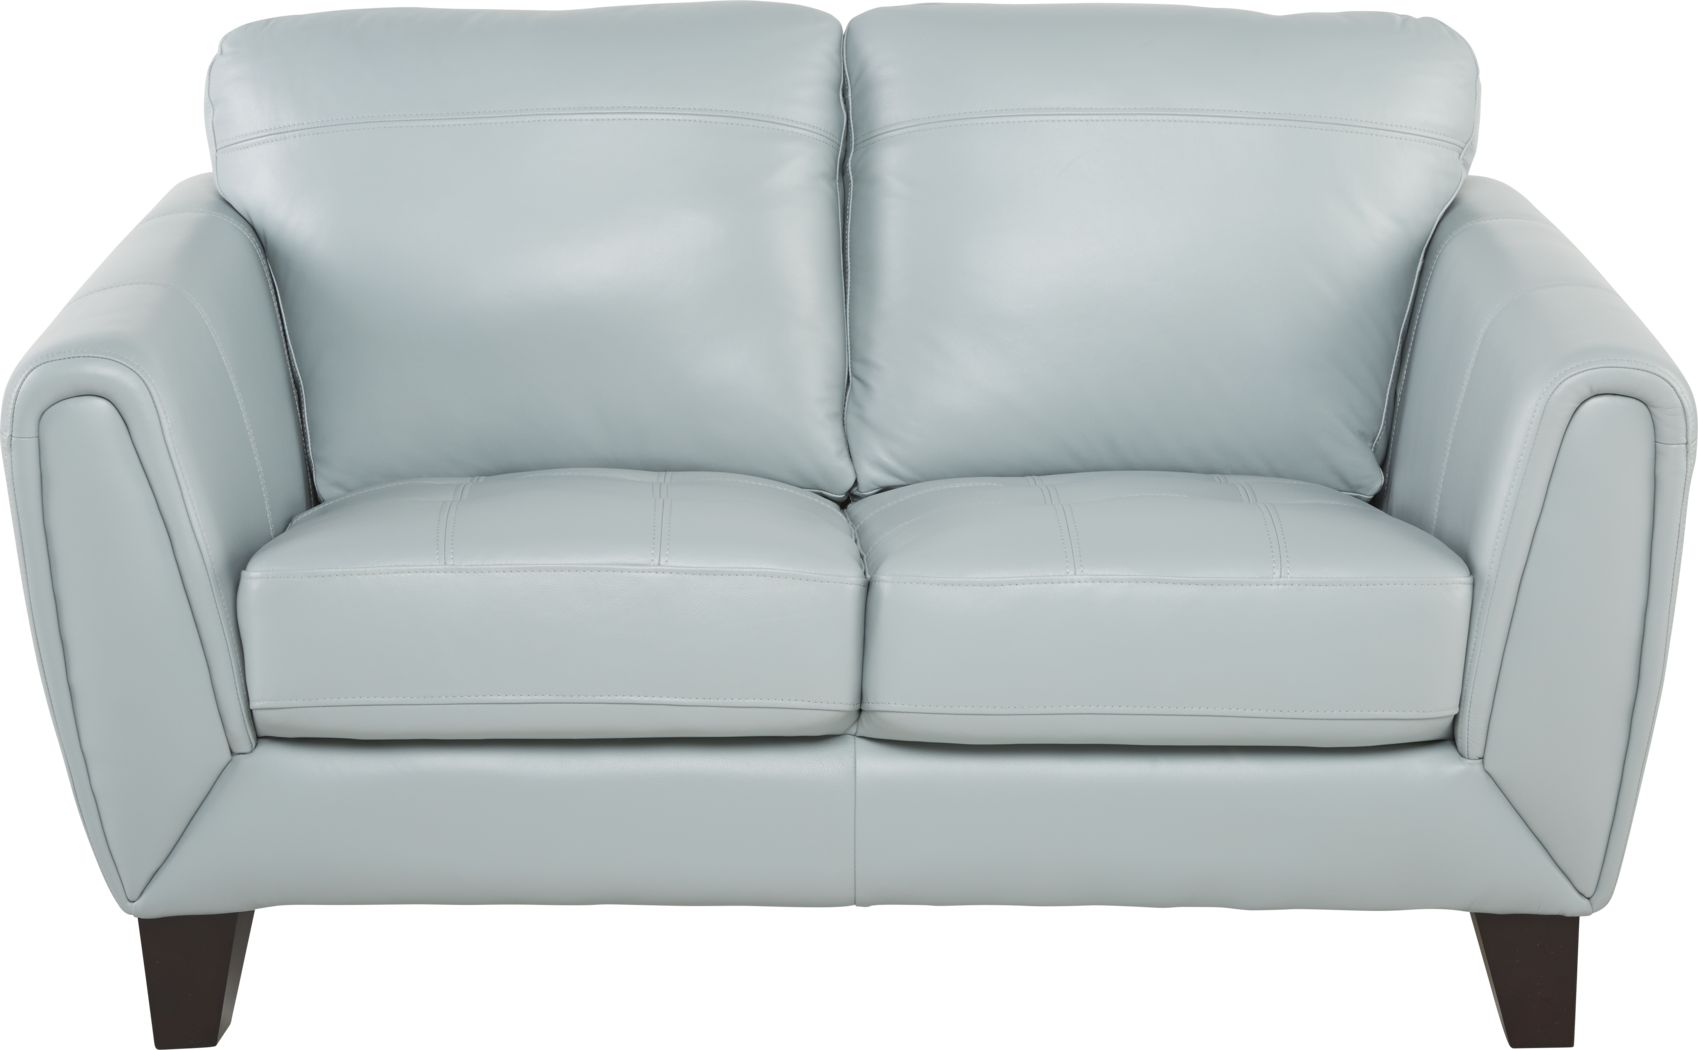 livorno aqua leather sofa reviews